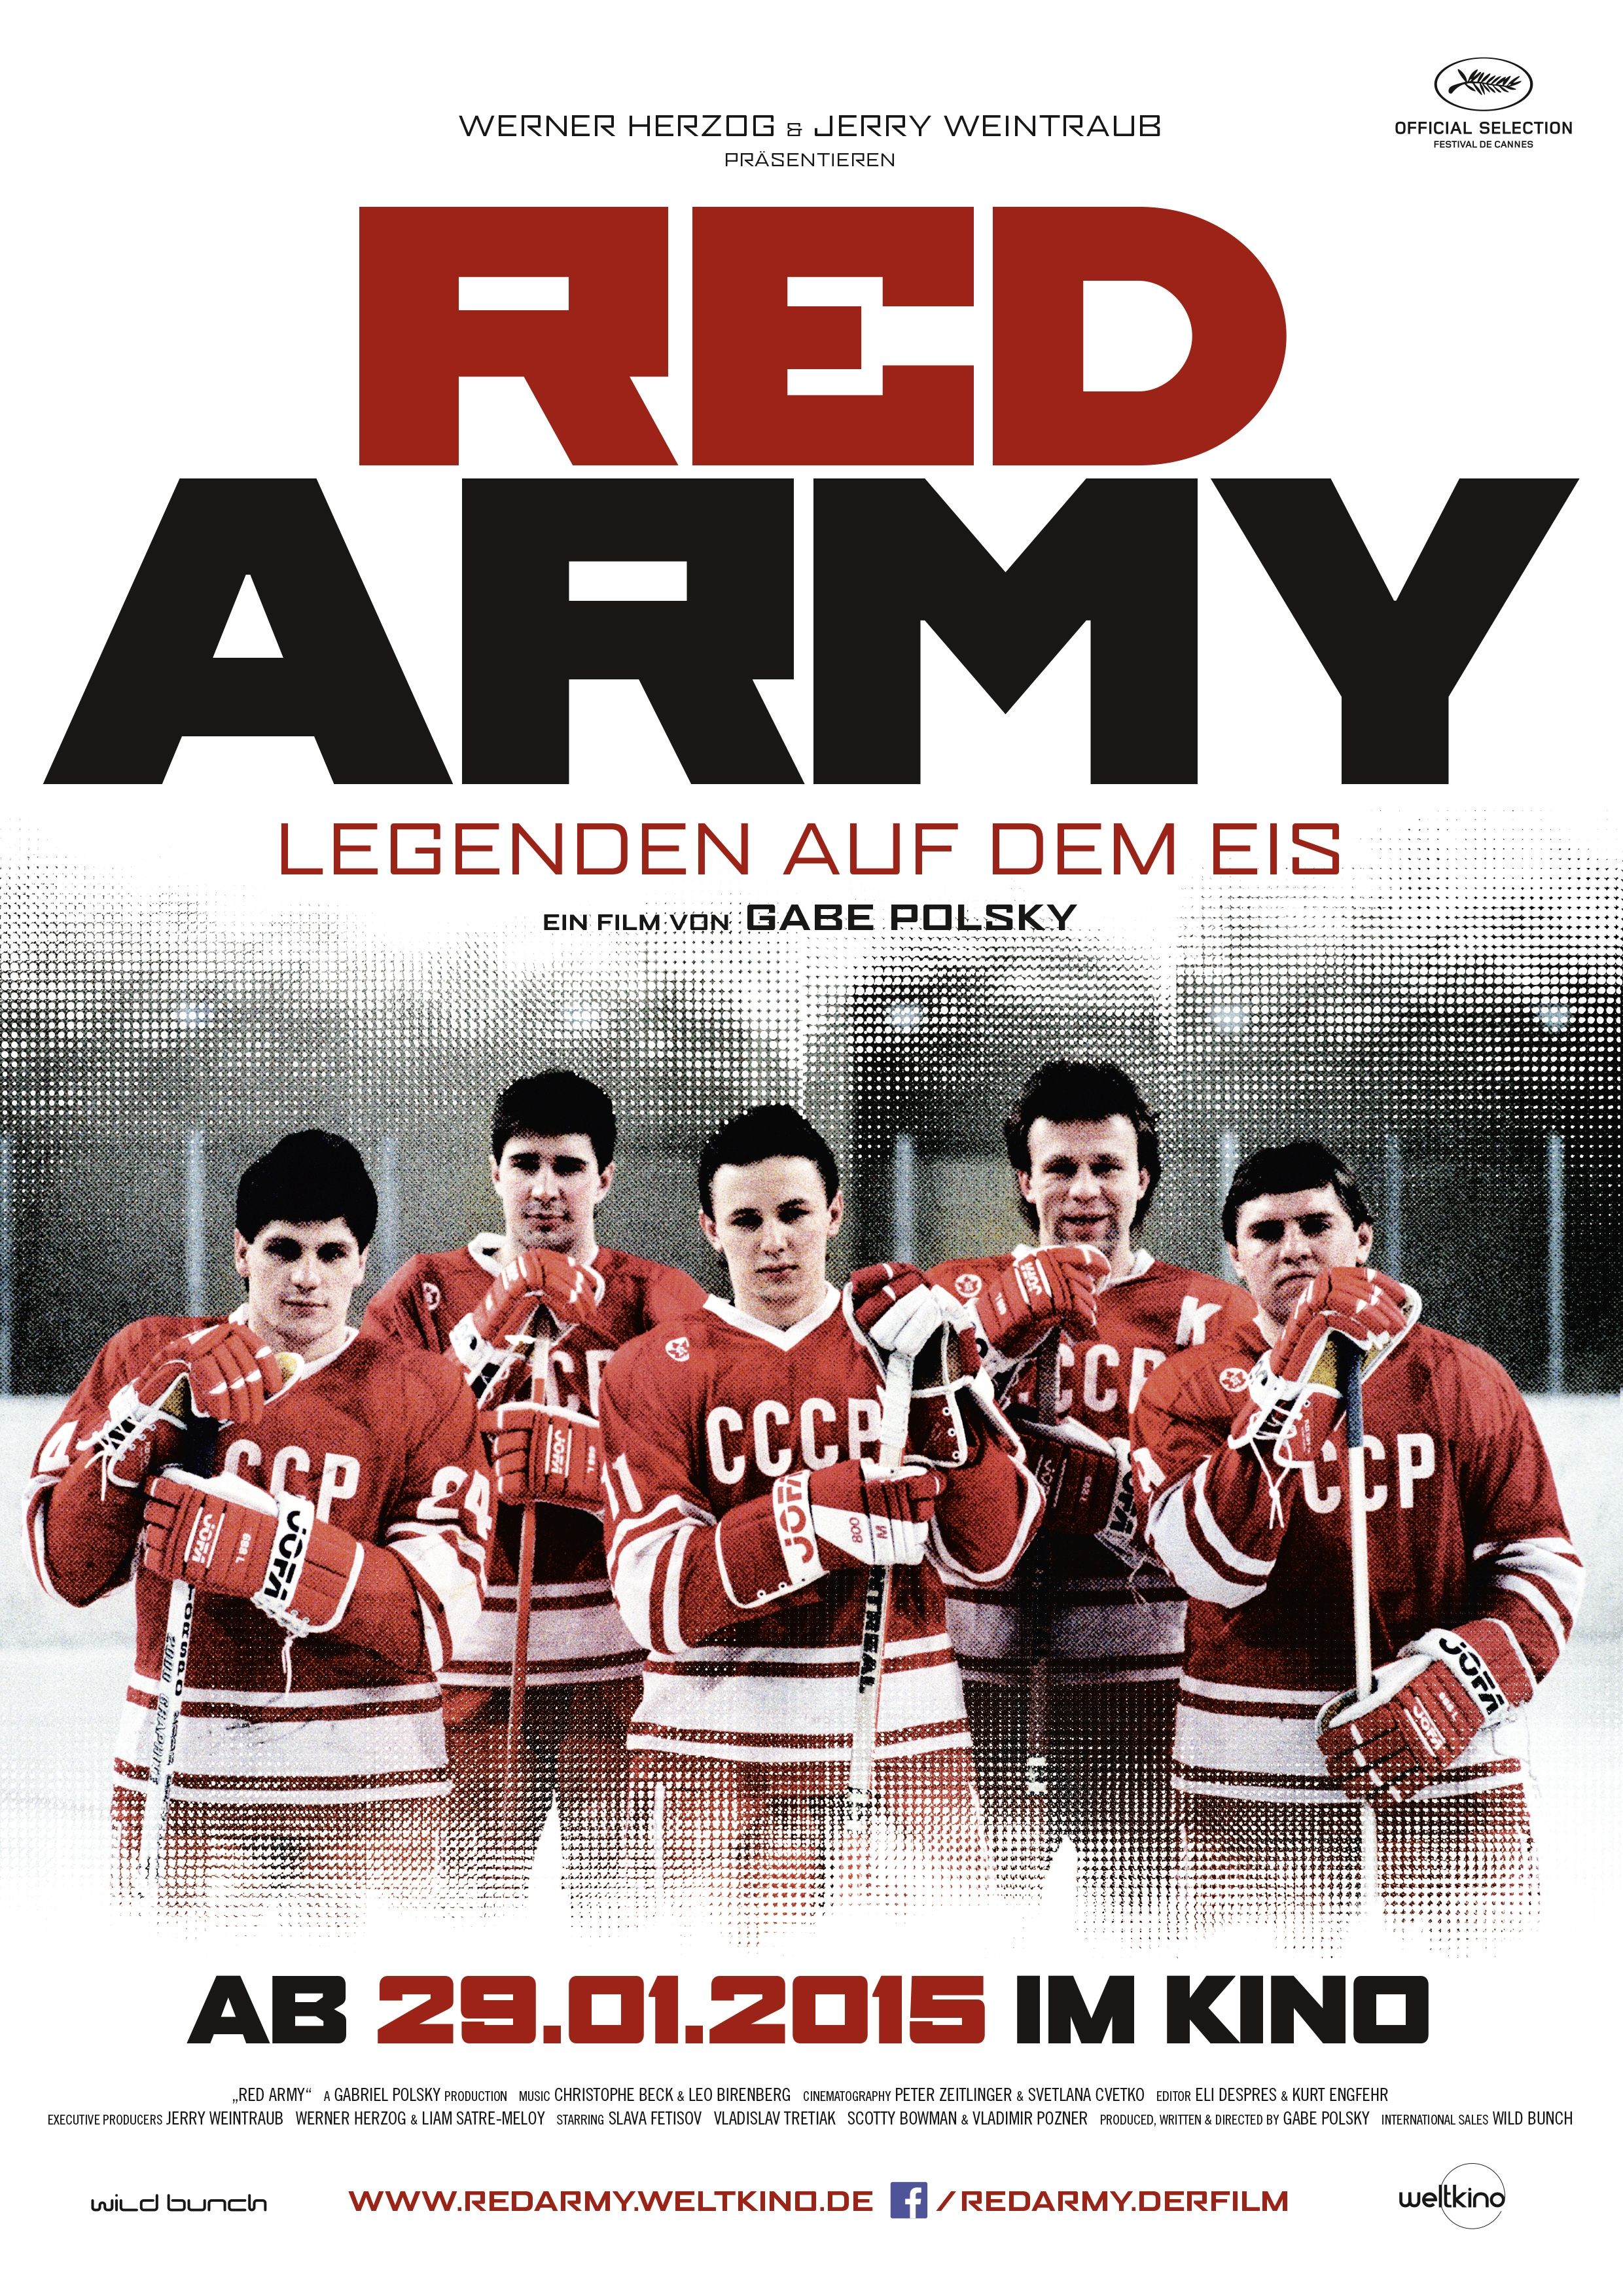 Красная армия